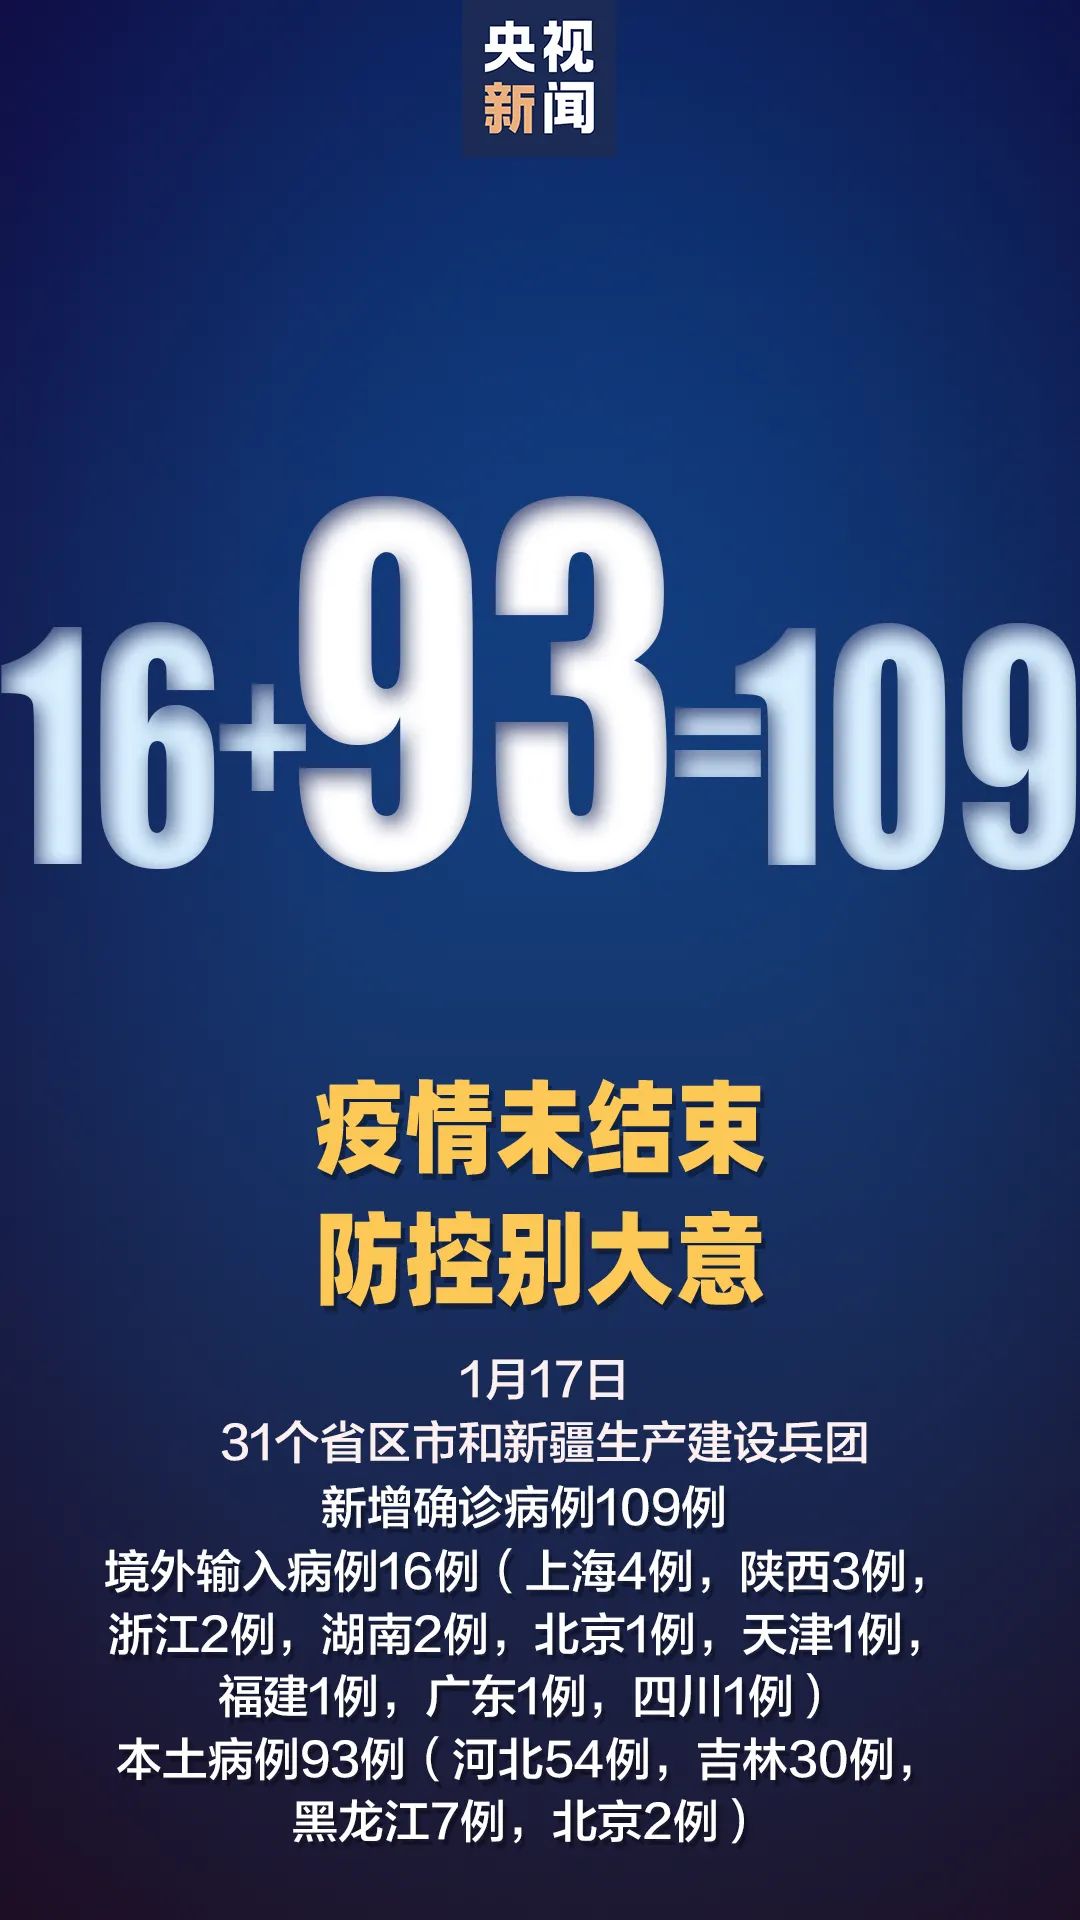 新增本土确诊93例:河北 54,吉林 30,黑龙江 7,北京 2